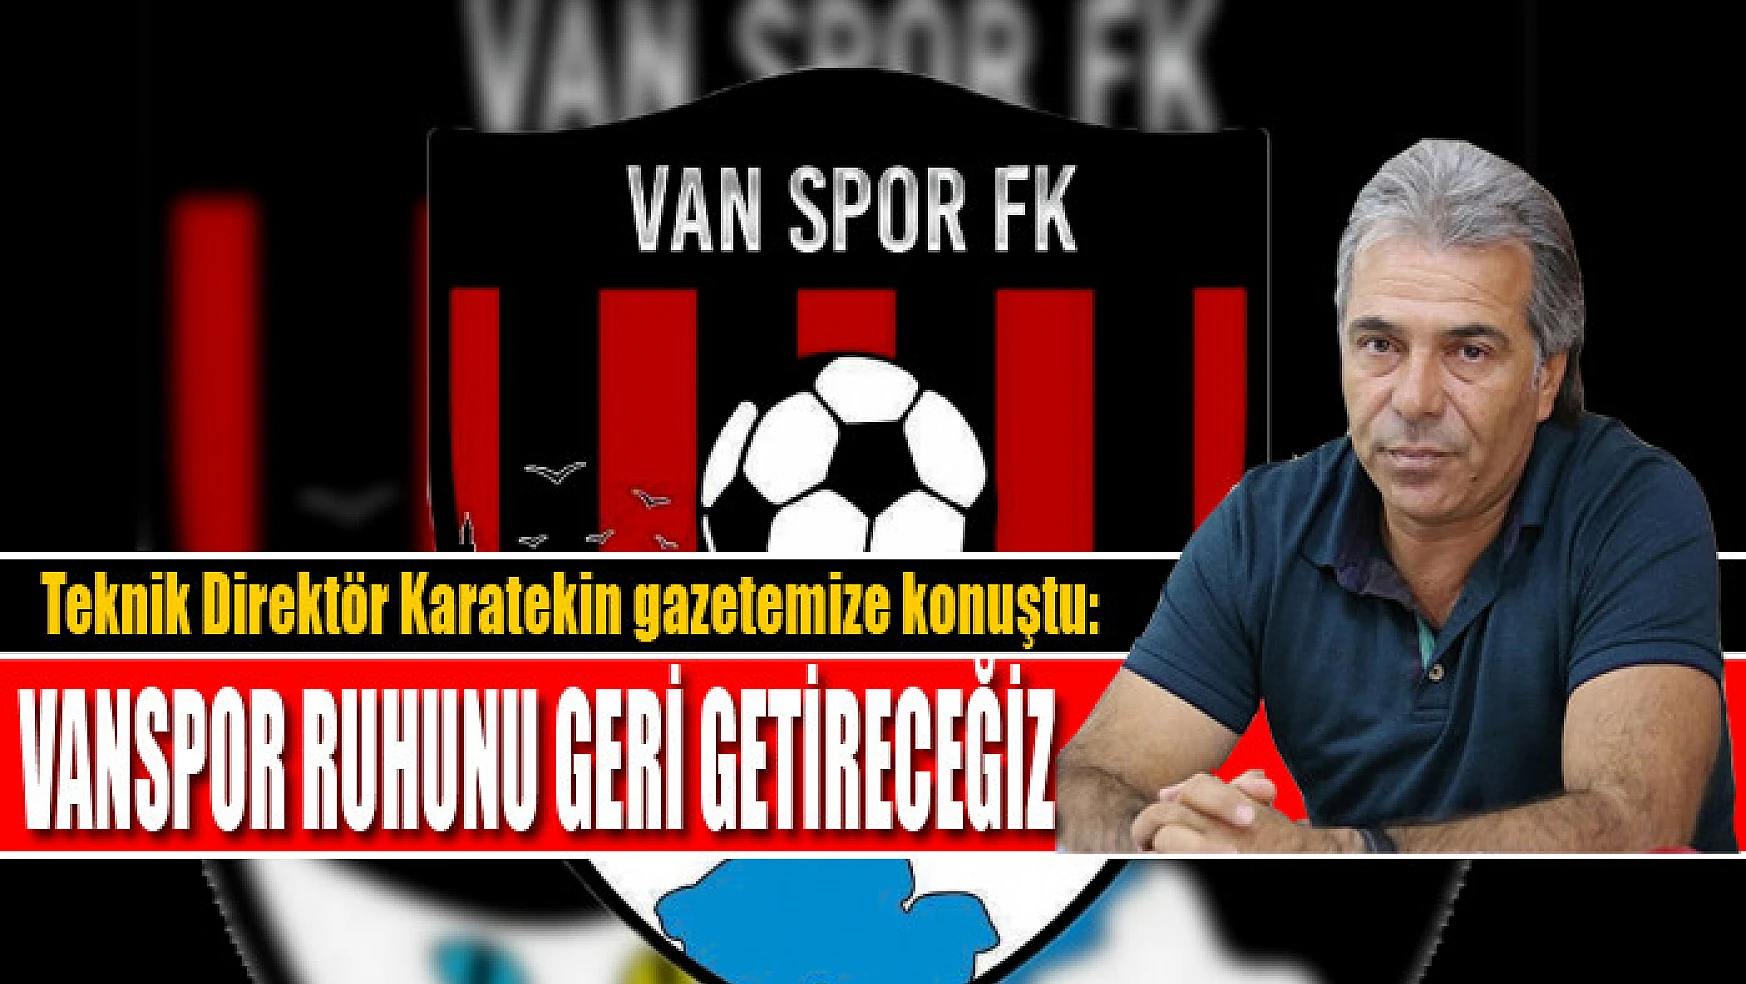 Vanspor Teknik Direktörü Turgay Karatekin: Vanspor ruhunu geri getireceğiz